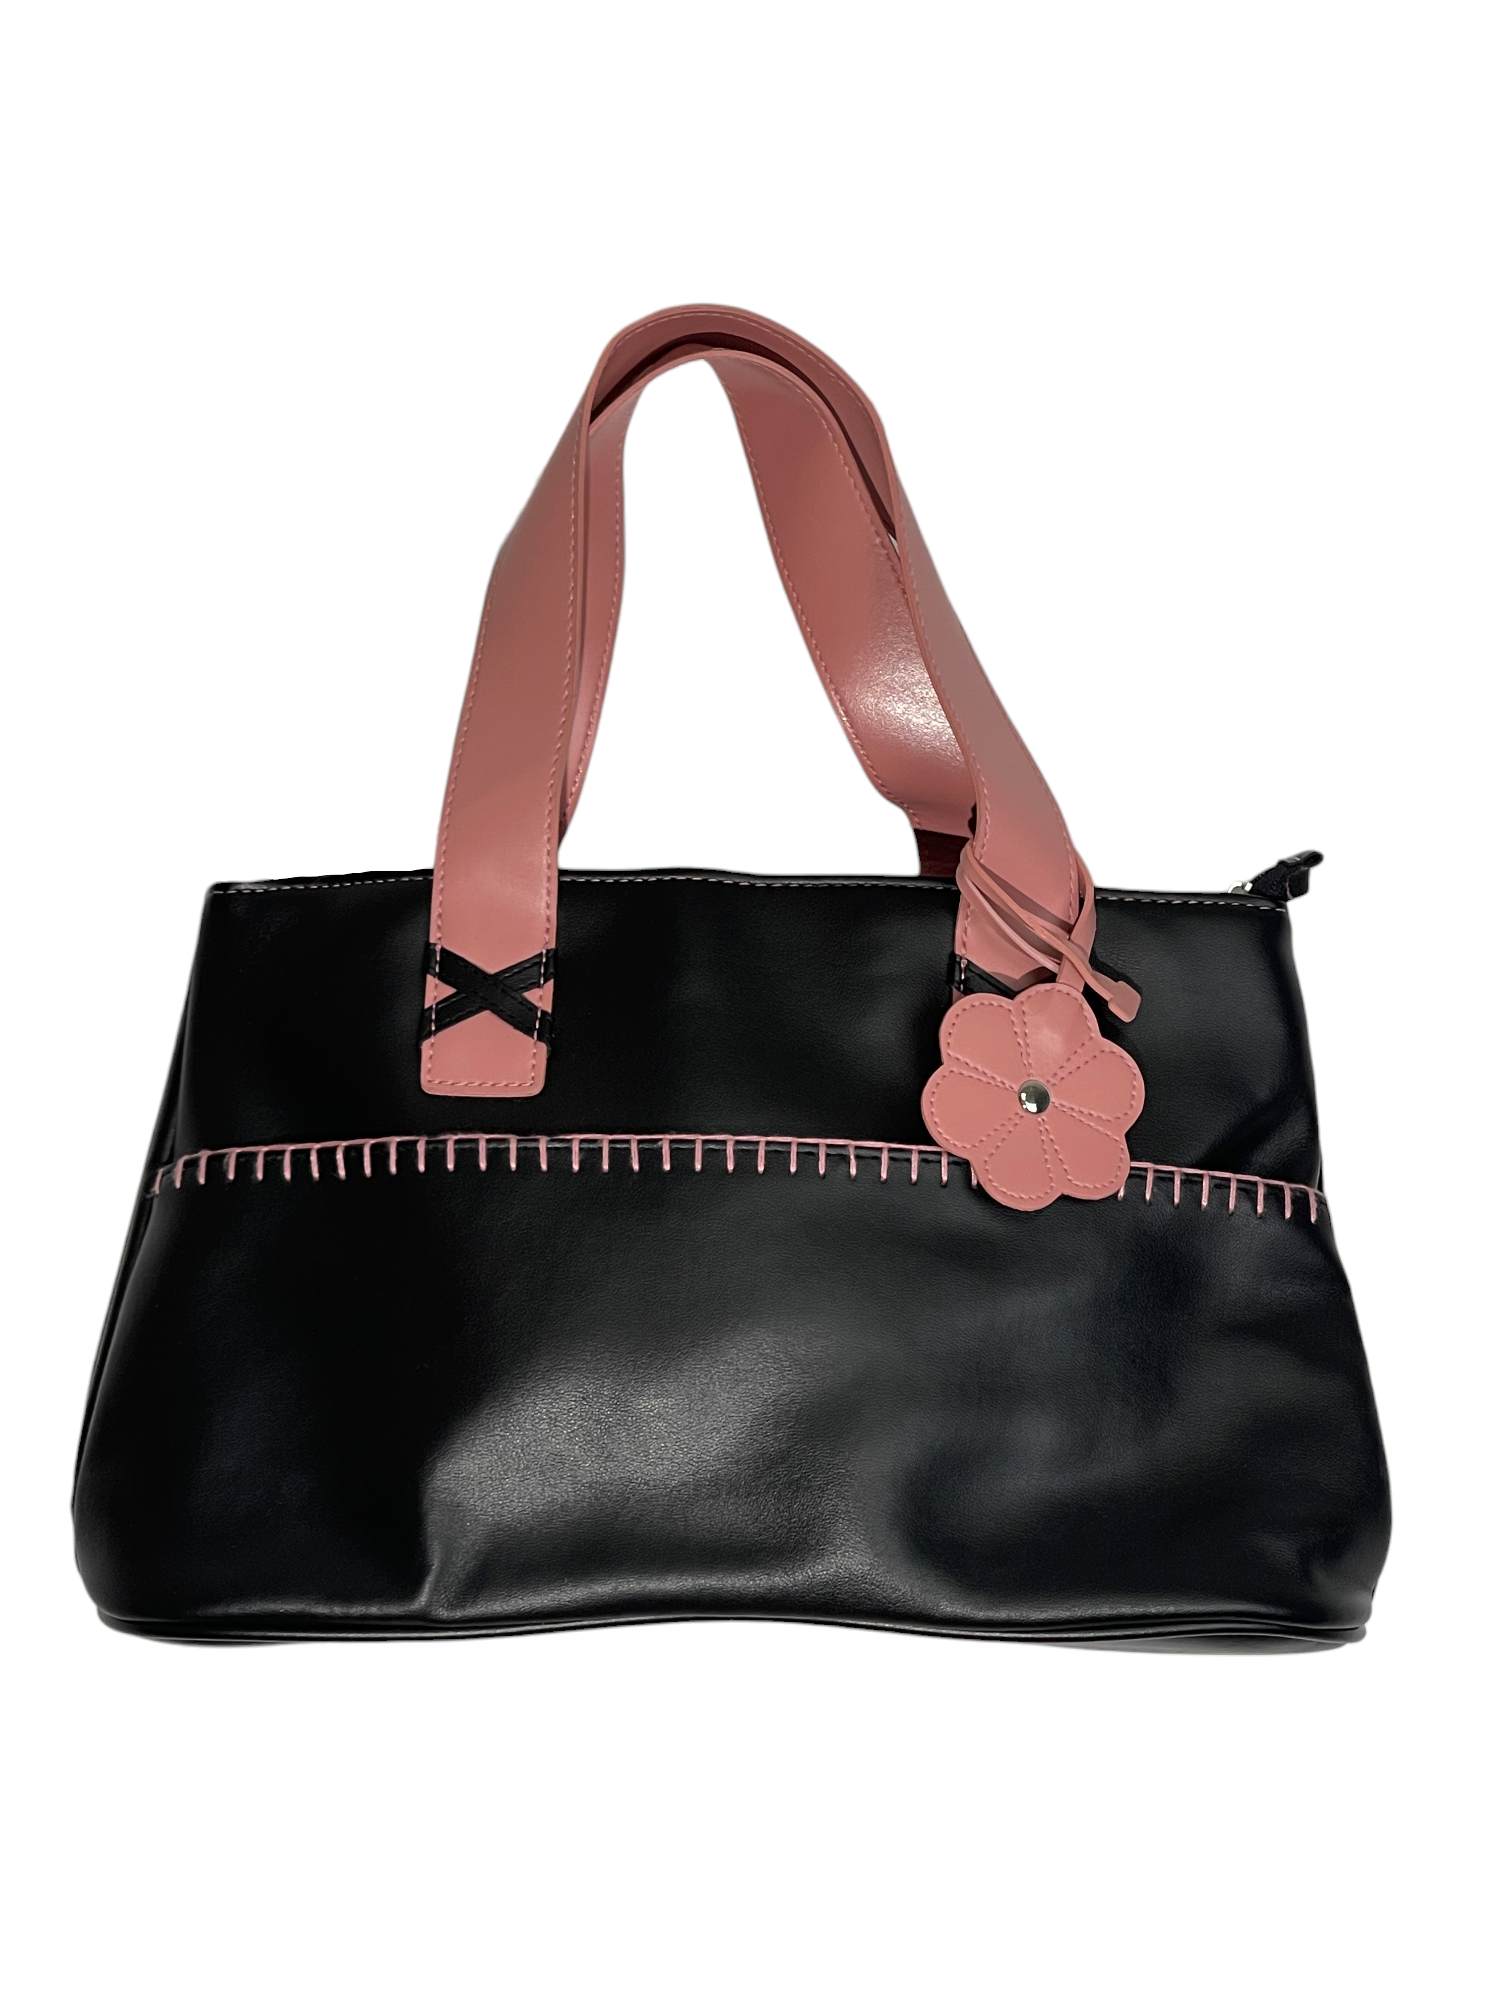 Black & Pink Leather Bag